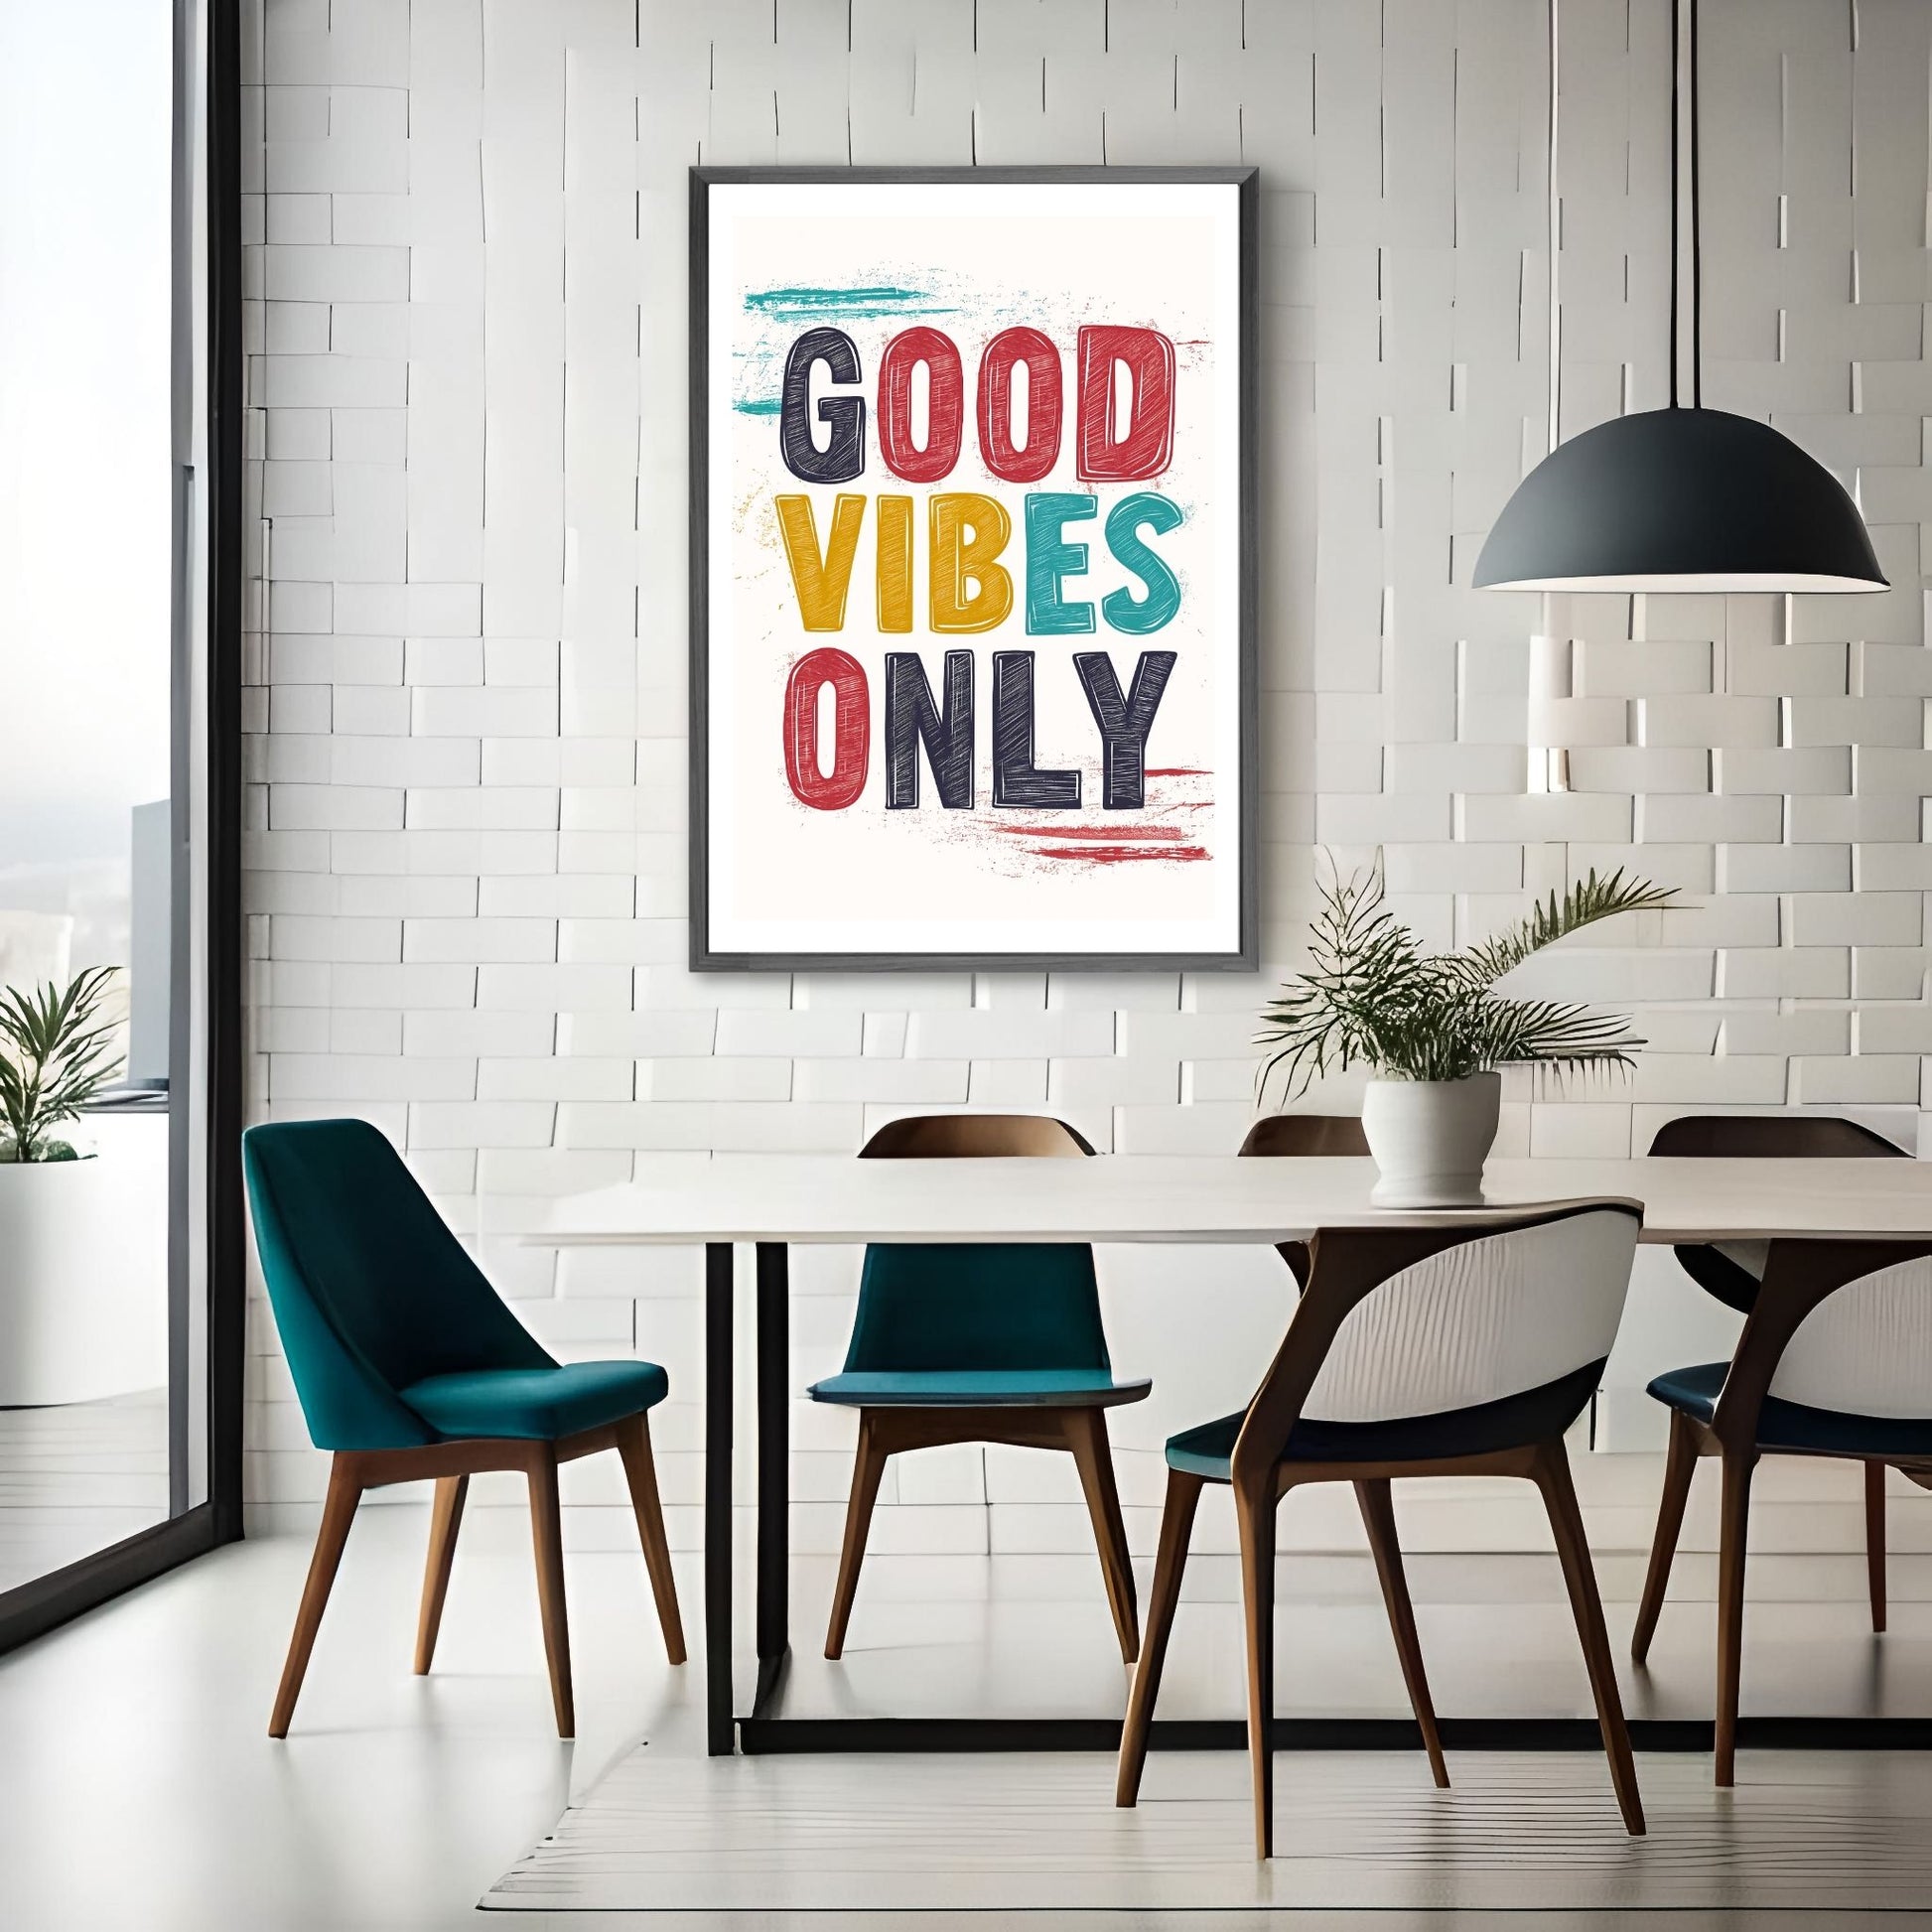 Grafisk illustrasjon med teksten "Good Vibes Only" i store, fete bokstaver i rødt, gult og blått mot en blå bakgrunn. Illustrasjonsfoto av plakat i sort ramme på en vegg ved et spisebord.